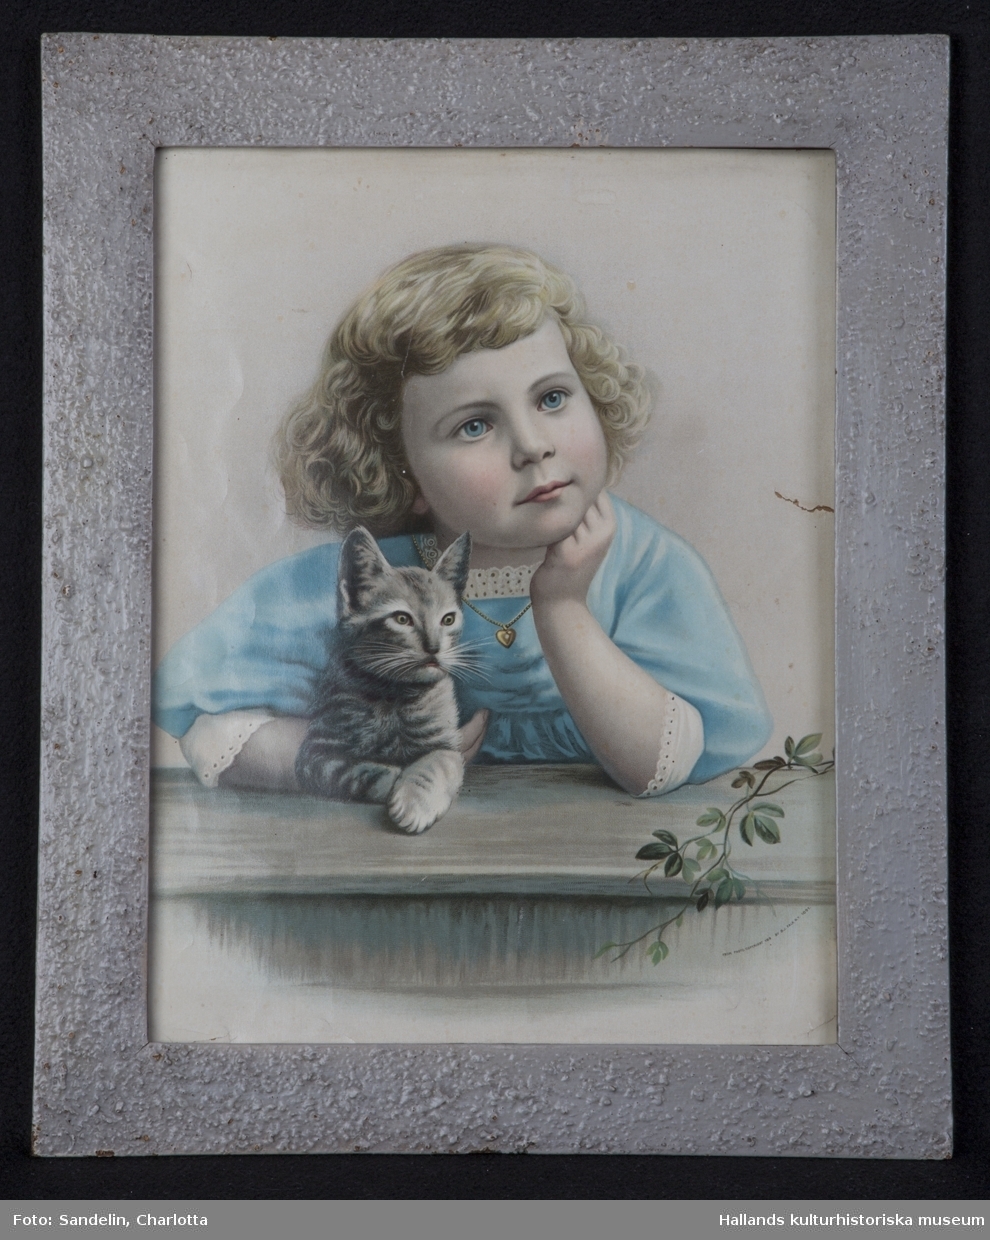 Oljetryck med ram. a) Tryck. Ung drömmande flicka med kattunge. Mått: bredd 30 cm, höjd 40 cm. b) Ram. Mått: bredd 5 cm, grå. Märkning: "FROM PHOTO. COPYRIGHT 189 BY B.J. FALK N.Y.1891".